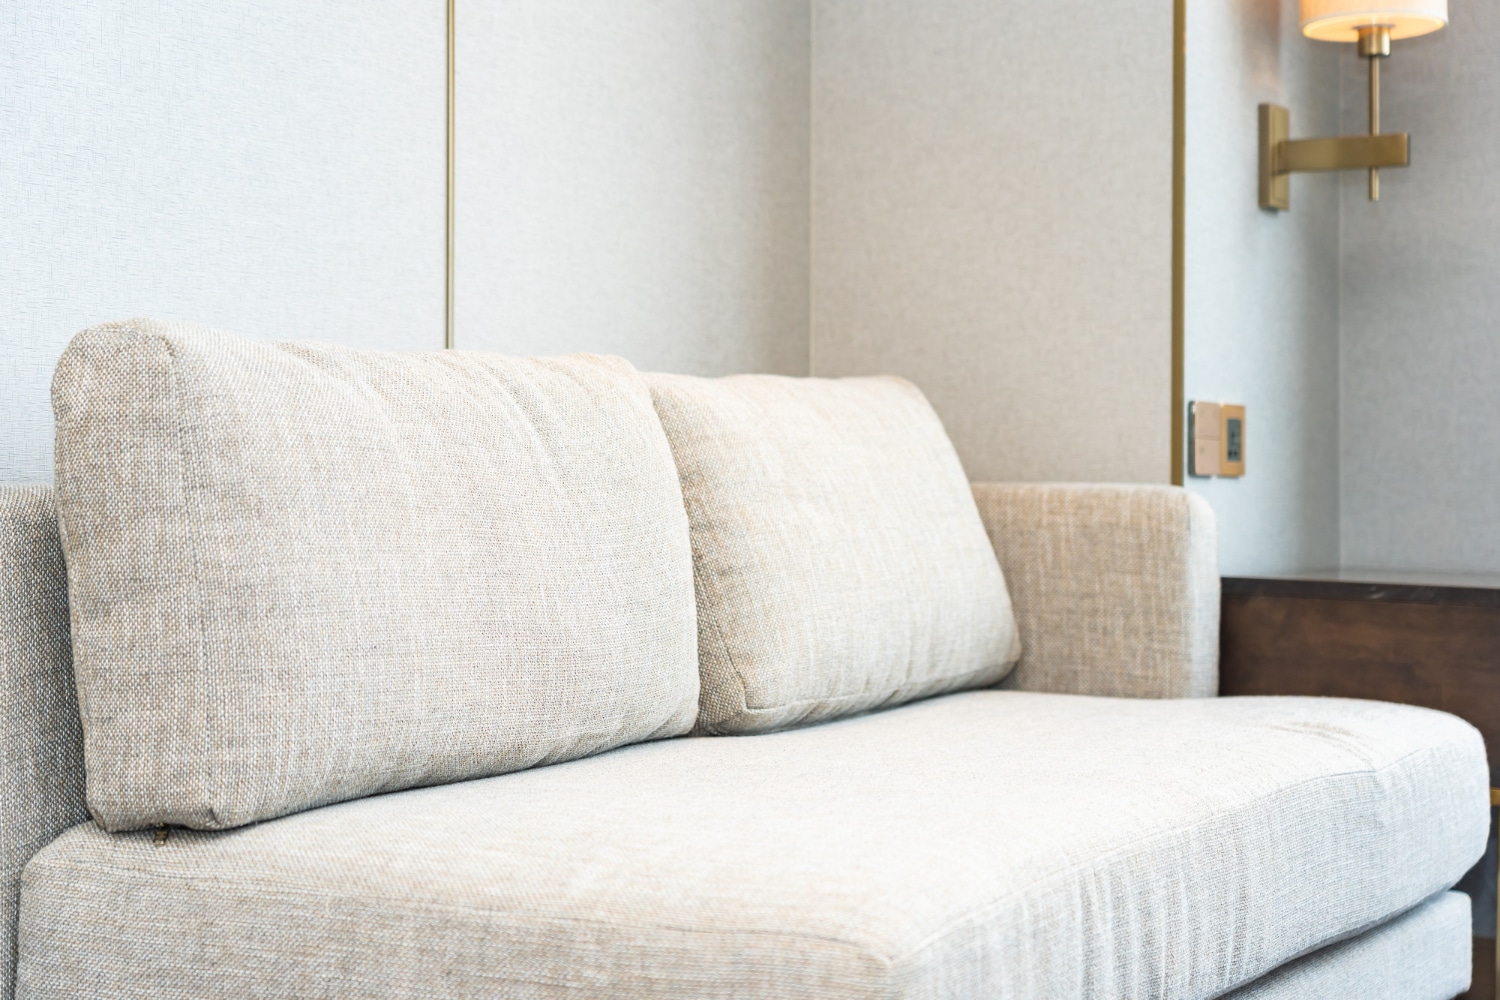 Canapé moderne beige avec des coussins texturés, placé dans un salon lumineux et minimaliste avec une lumière élégante et des murs de couleur claire.